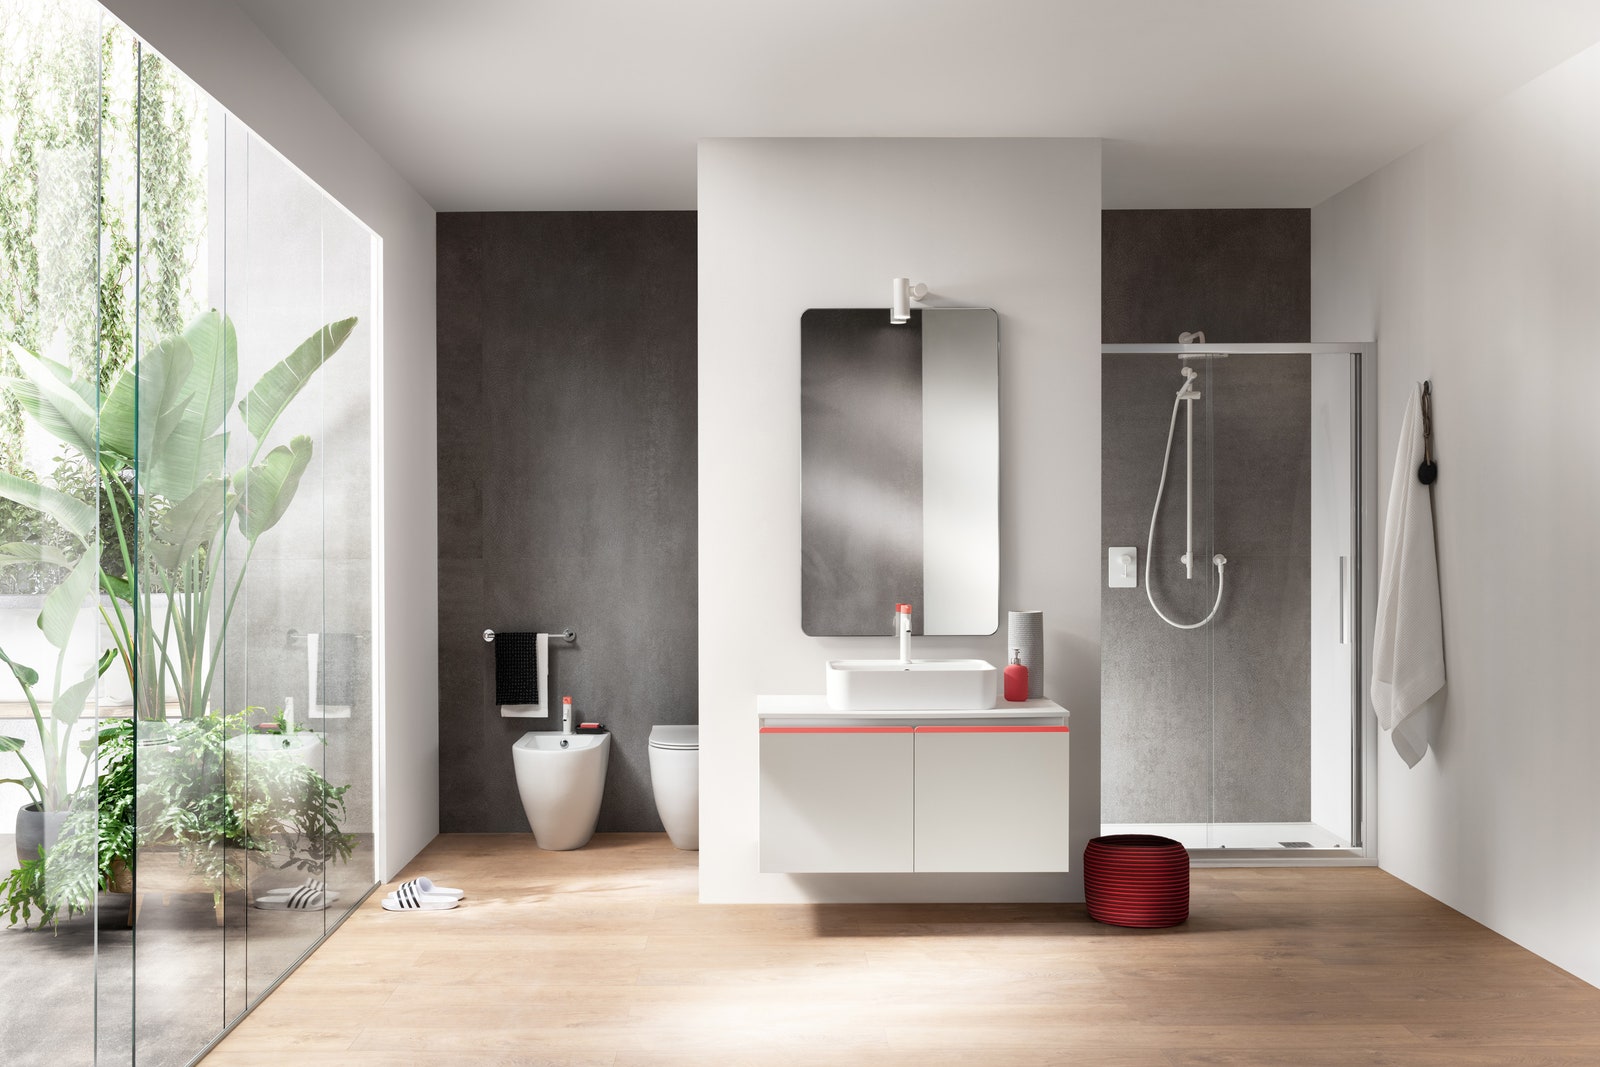 Ванная с мебелью из коллекции Dandy Plus по дизайну Фабио Новембре для Scavolini Bathrooms.